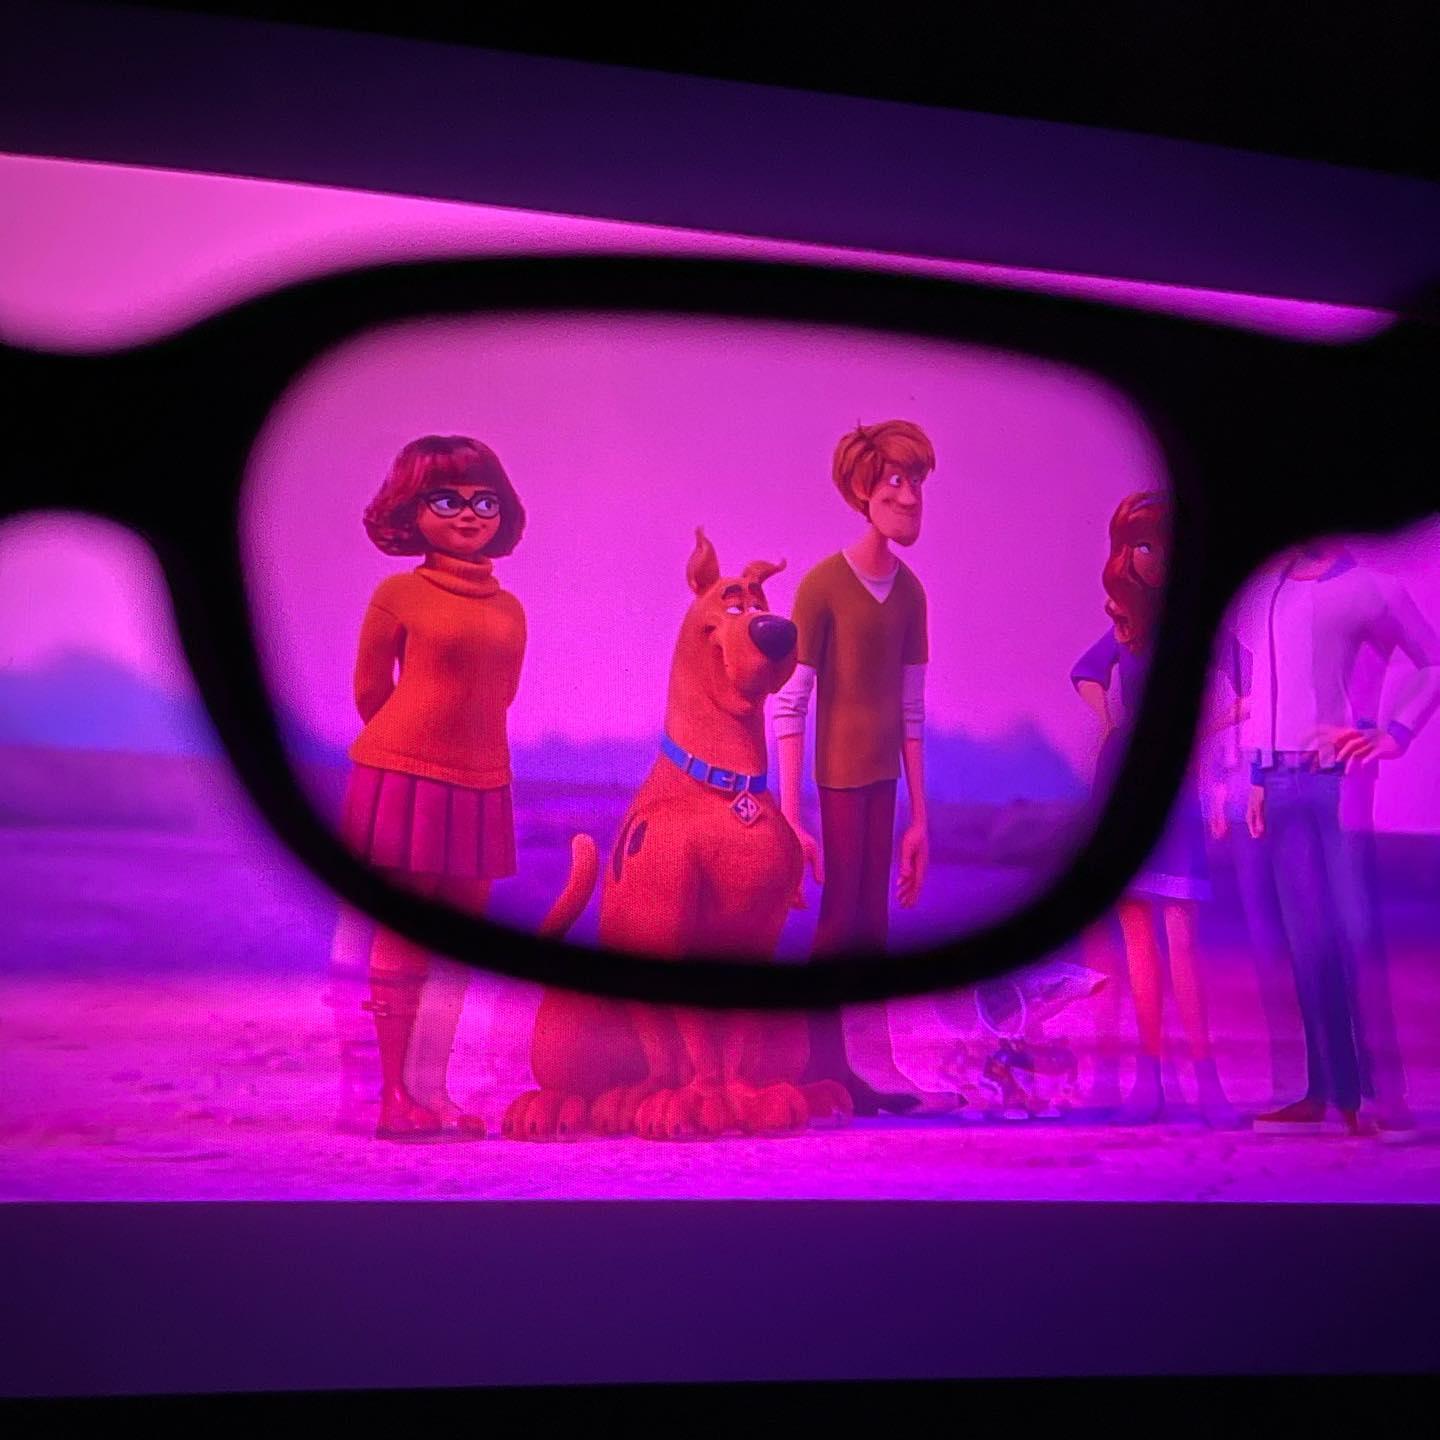 Alpen Park Promove Lançamento Nacional do Filme Scooby! Experiência 4D